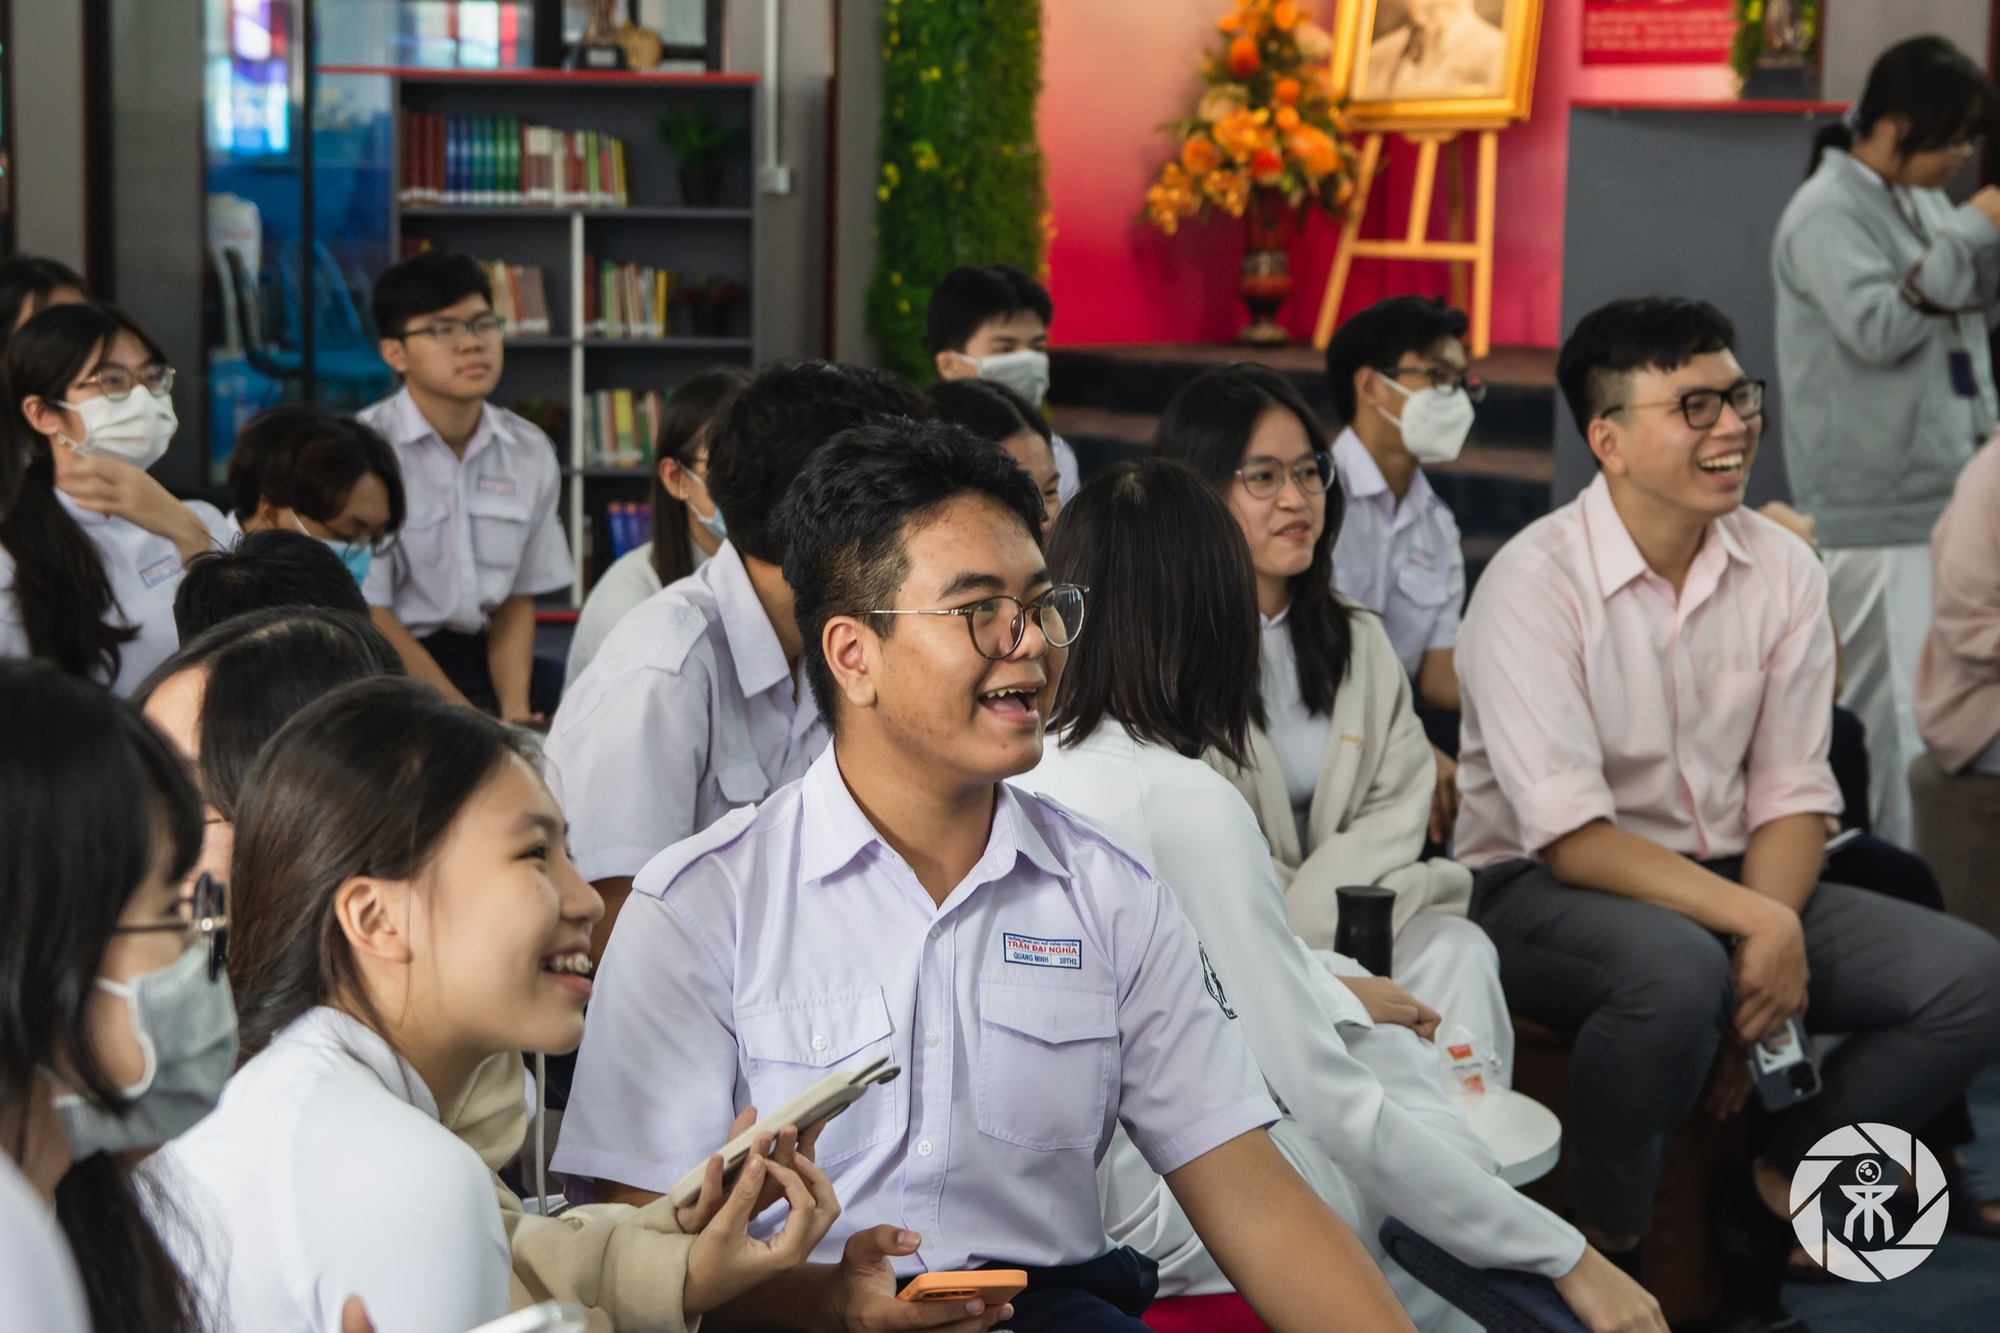 UBND TP.HCM đồng ý tách Trường THPT chuyên Trần Đại Nghĩa thành 2 trường có tư cách pháp nhân riêng- Ảnh 1.